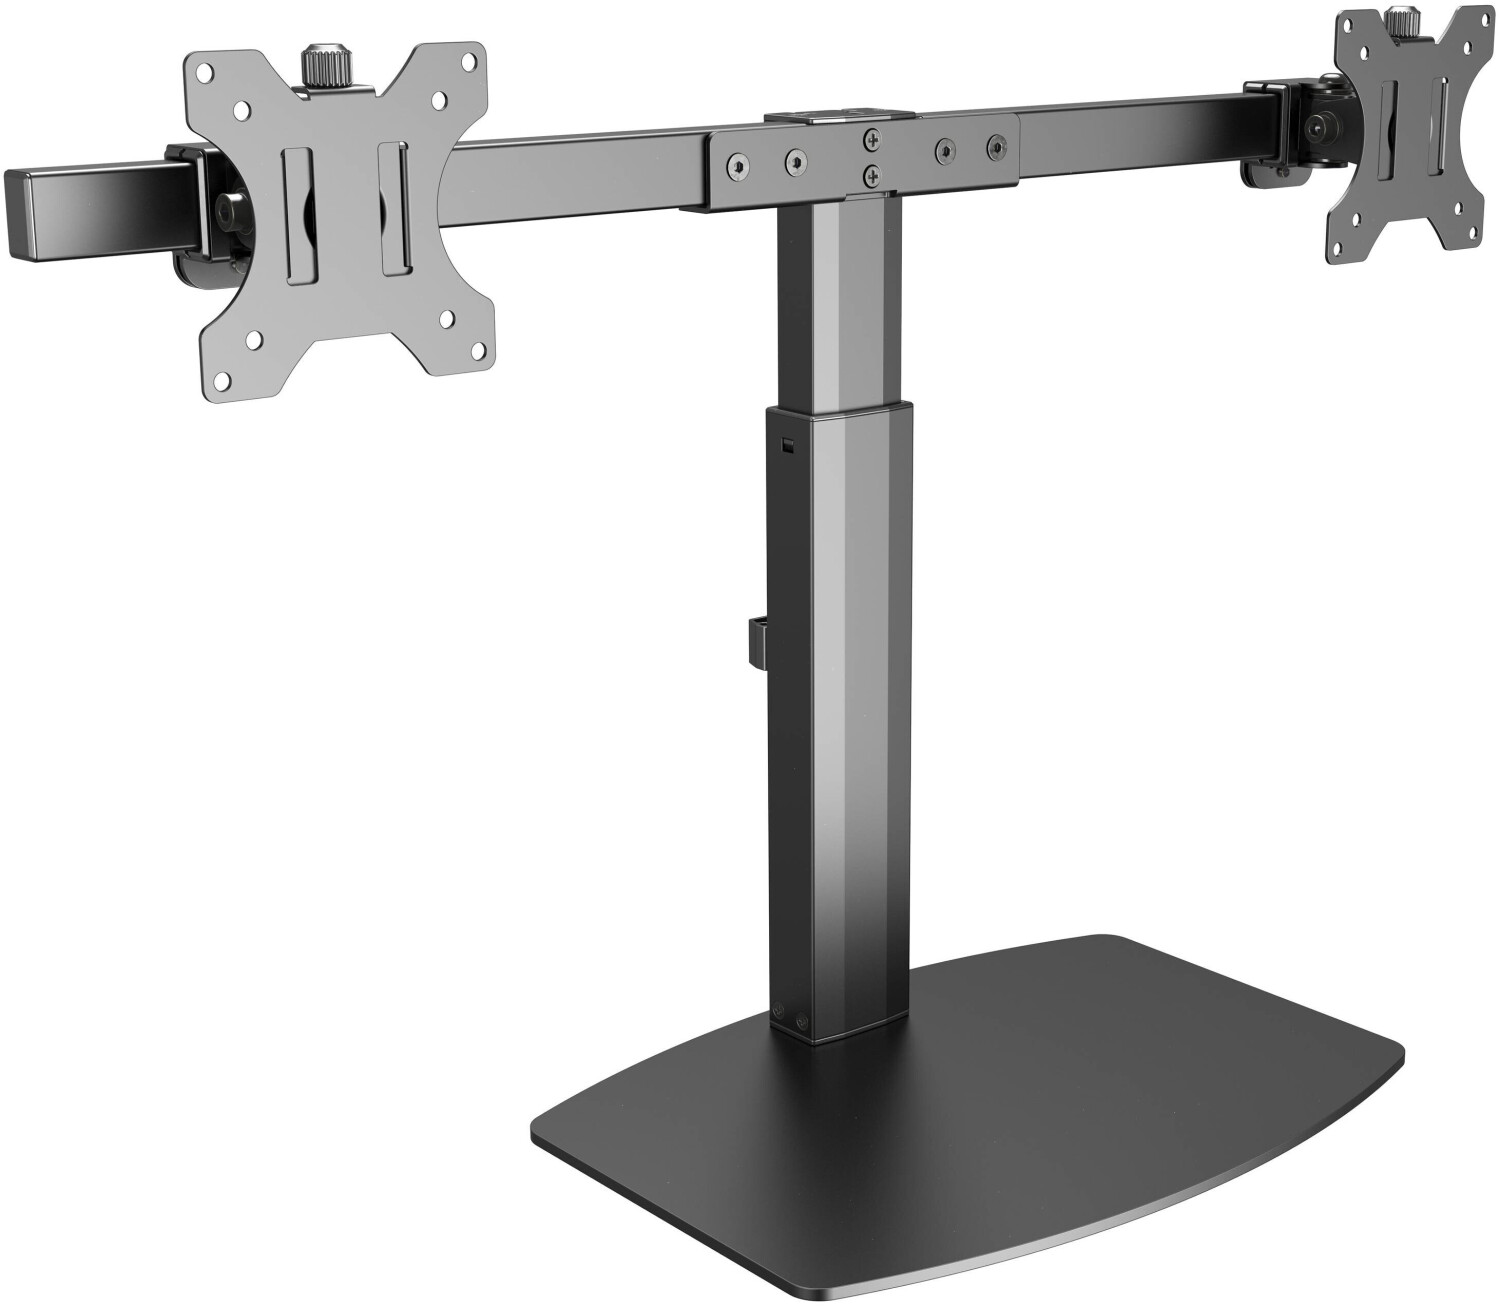 Tischhalterung 2 Monitore höhenverstellbar mit Gasdruckfeder 17-32